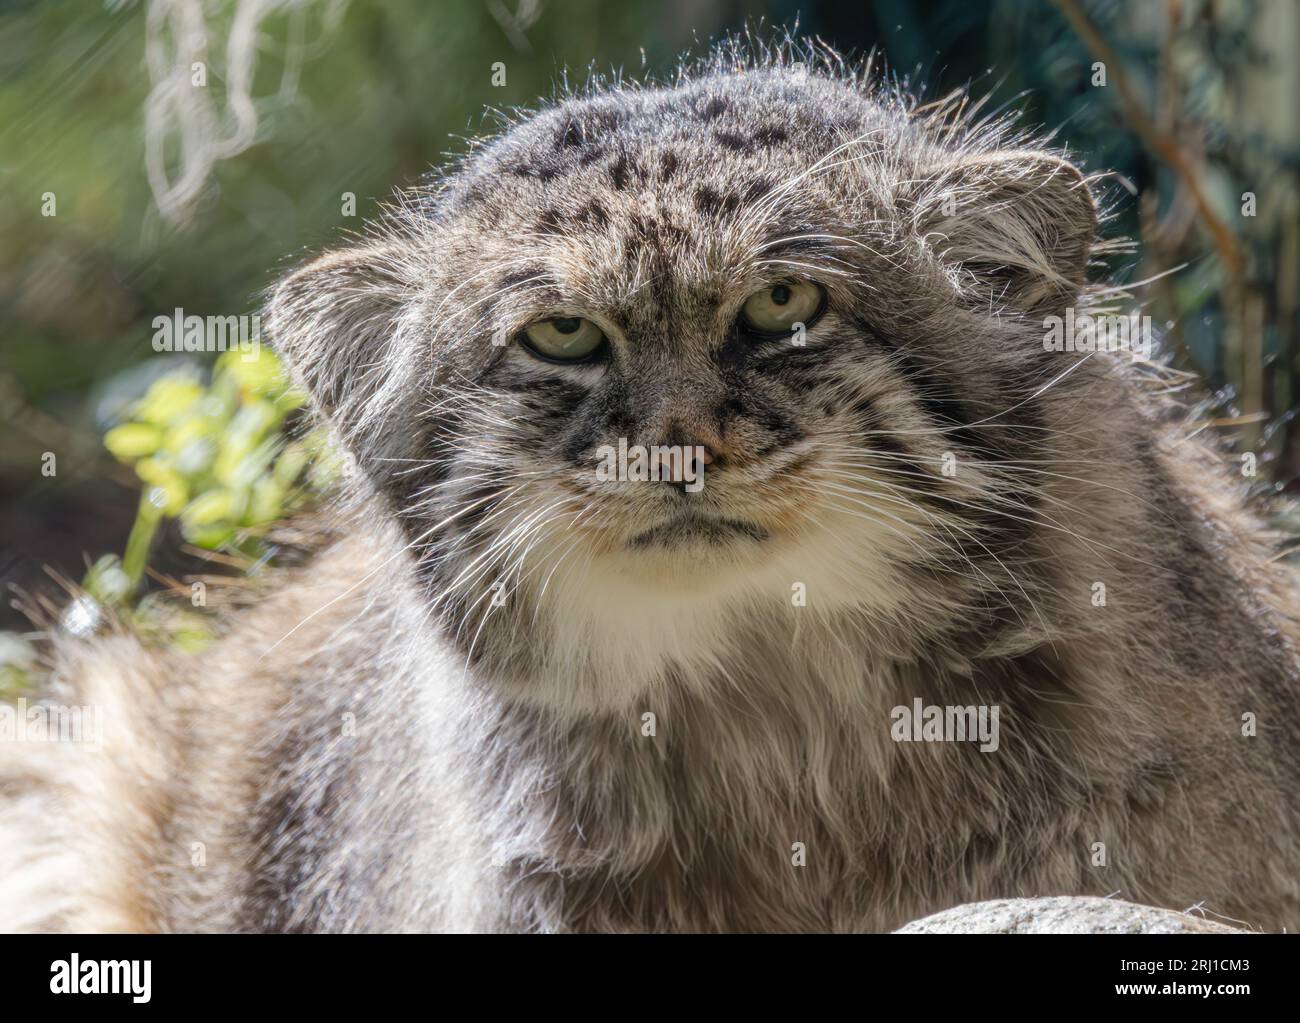 Le chat de Pallas (Otocolobus manul), également connu sous le nom de manul, est un petit chat sauvage avec une fourrure longue et dense gris clair, et des oreilles arrondies placées bas sur le côté Banque D'Images